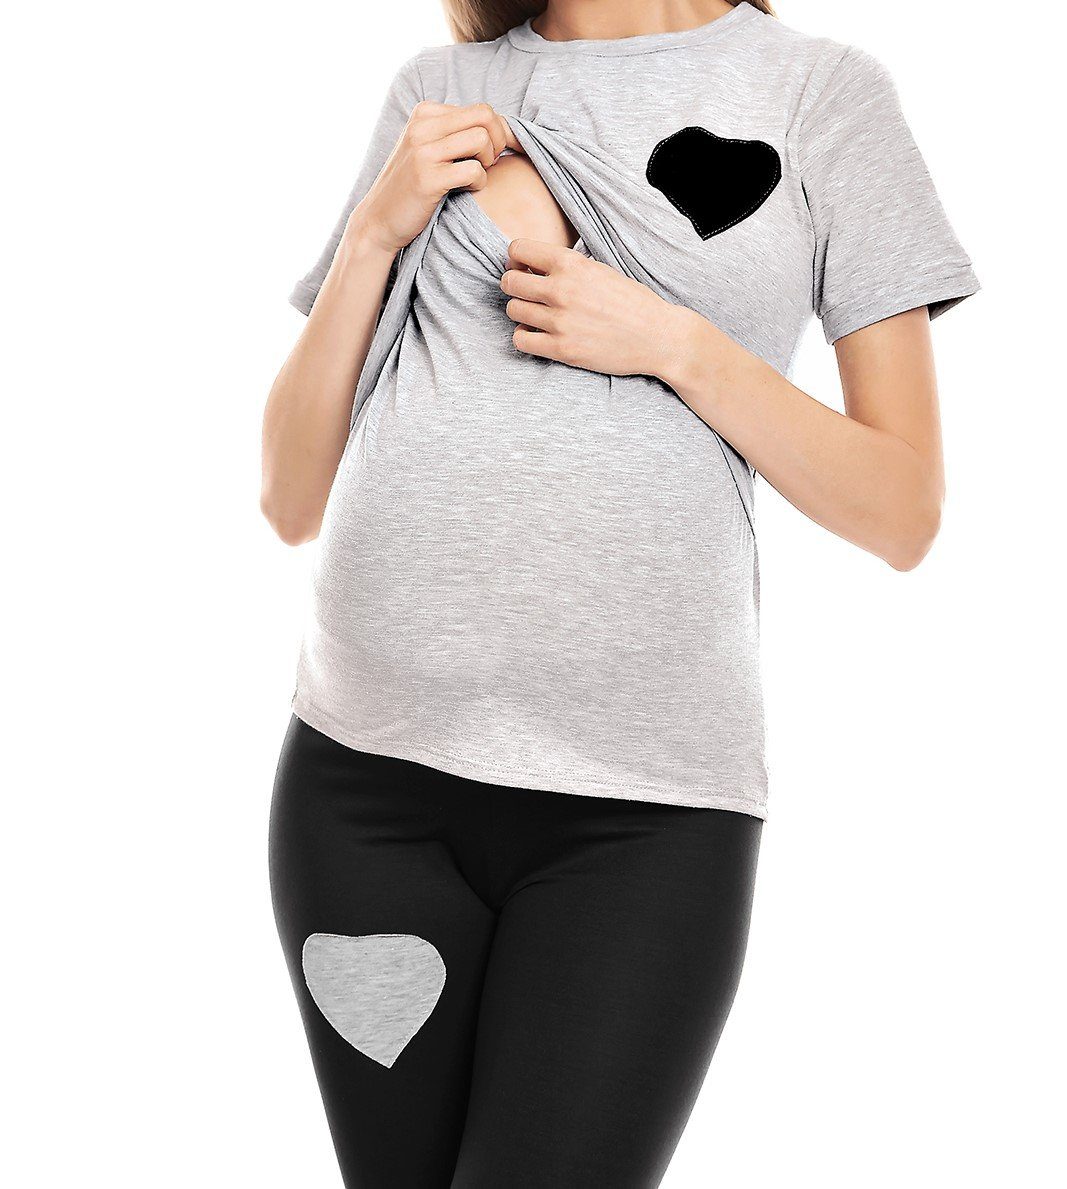 PeeKaBoo Umstandspyjama Schlafanzug Stillen Schwangerschaft Stillschlafanzug grau/schwarz